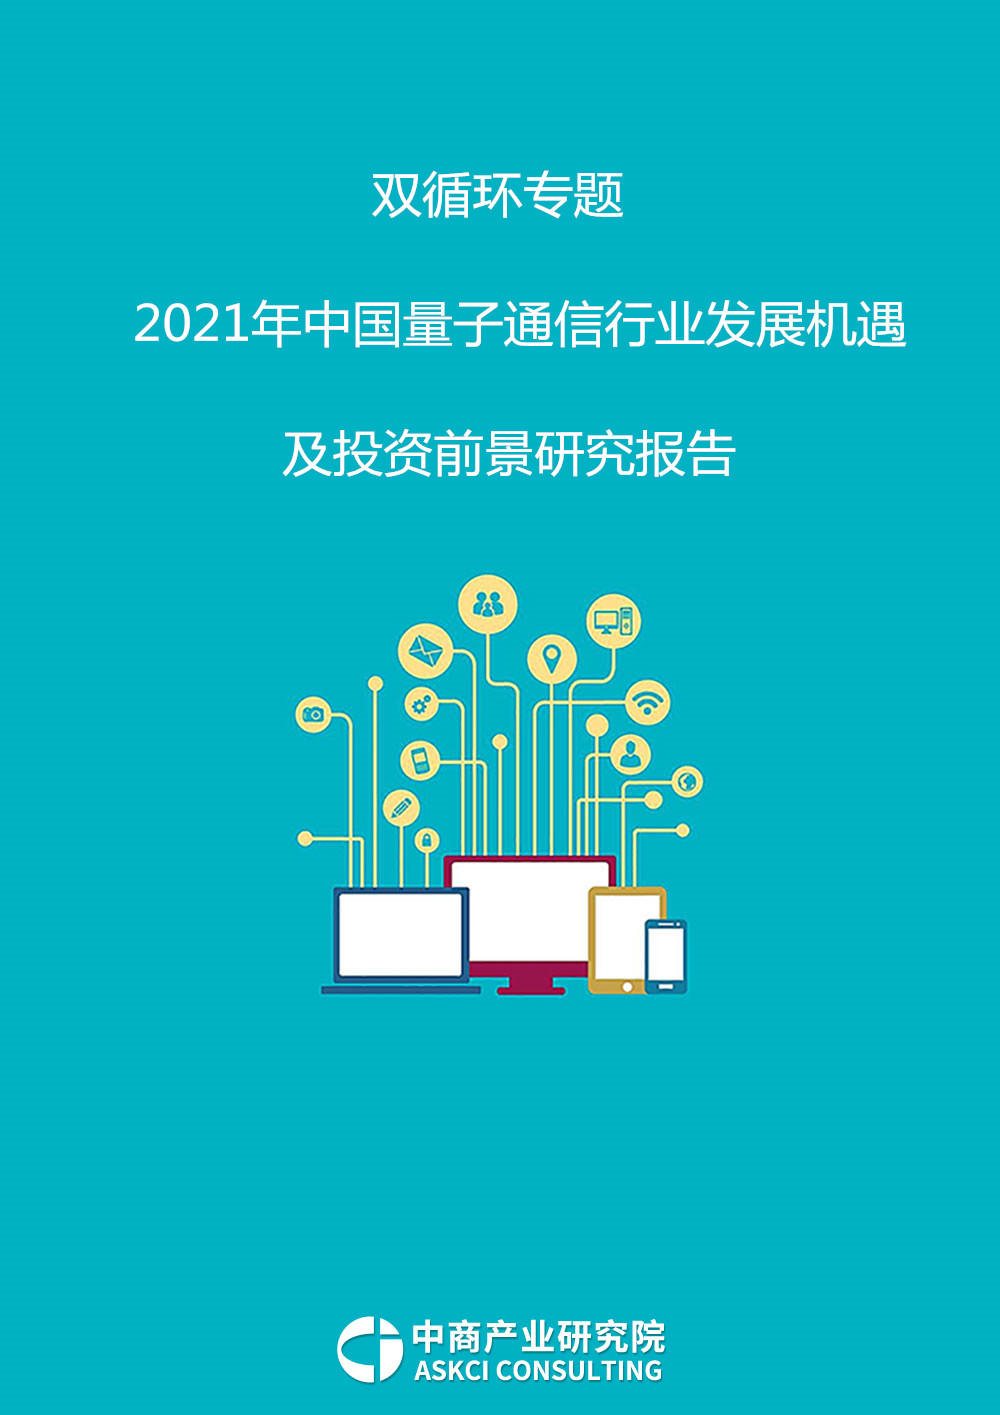 双循环专题——2021年中国量子通信行业发展机遇及投资前景研究报告